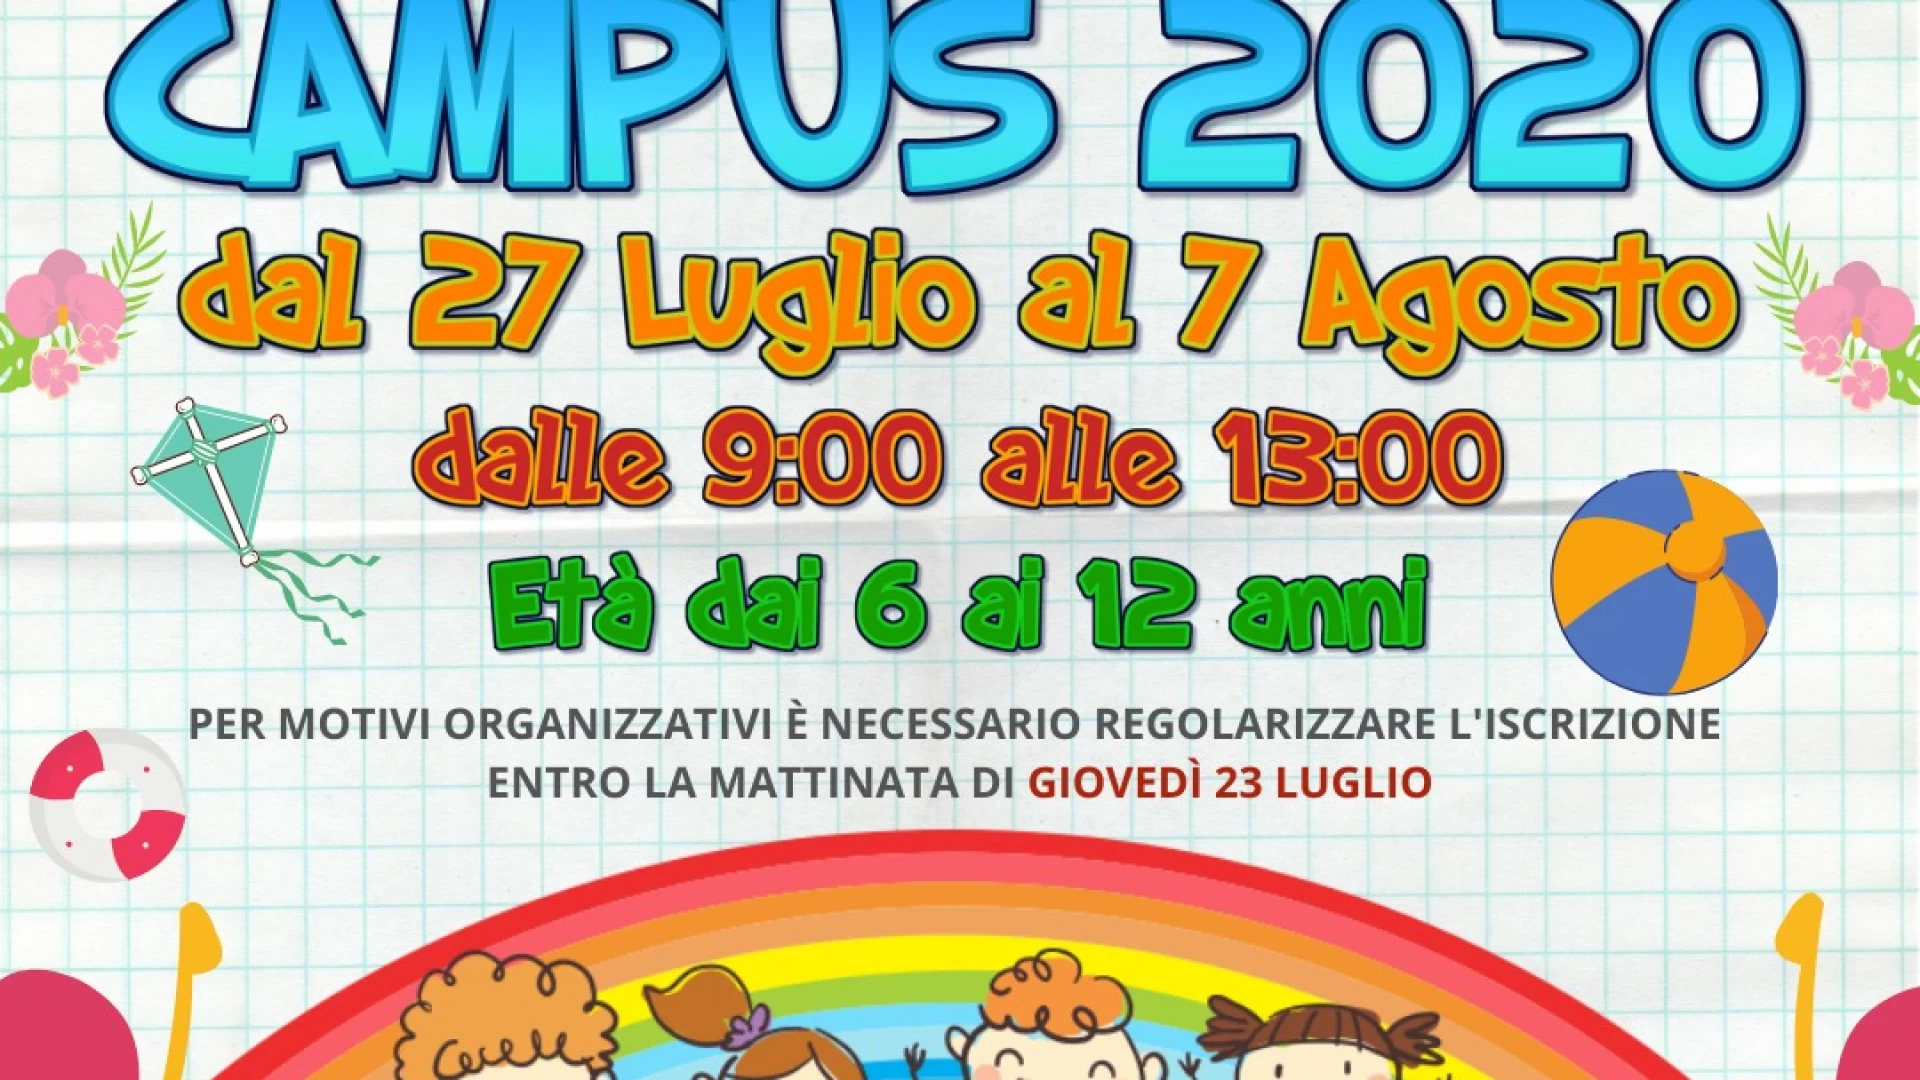 Colli a Volturno: dal 27 luglio il campus estivo organizzato da Forza Giovane.